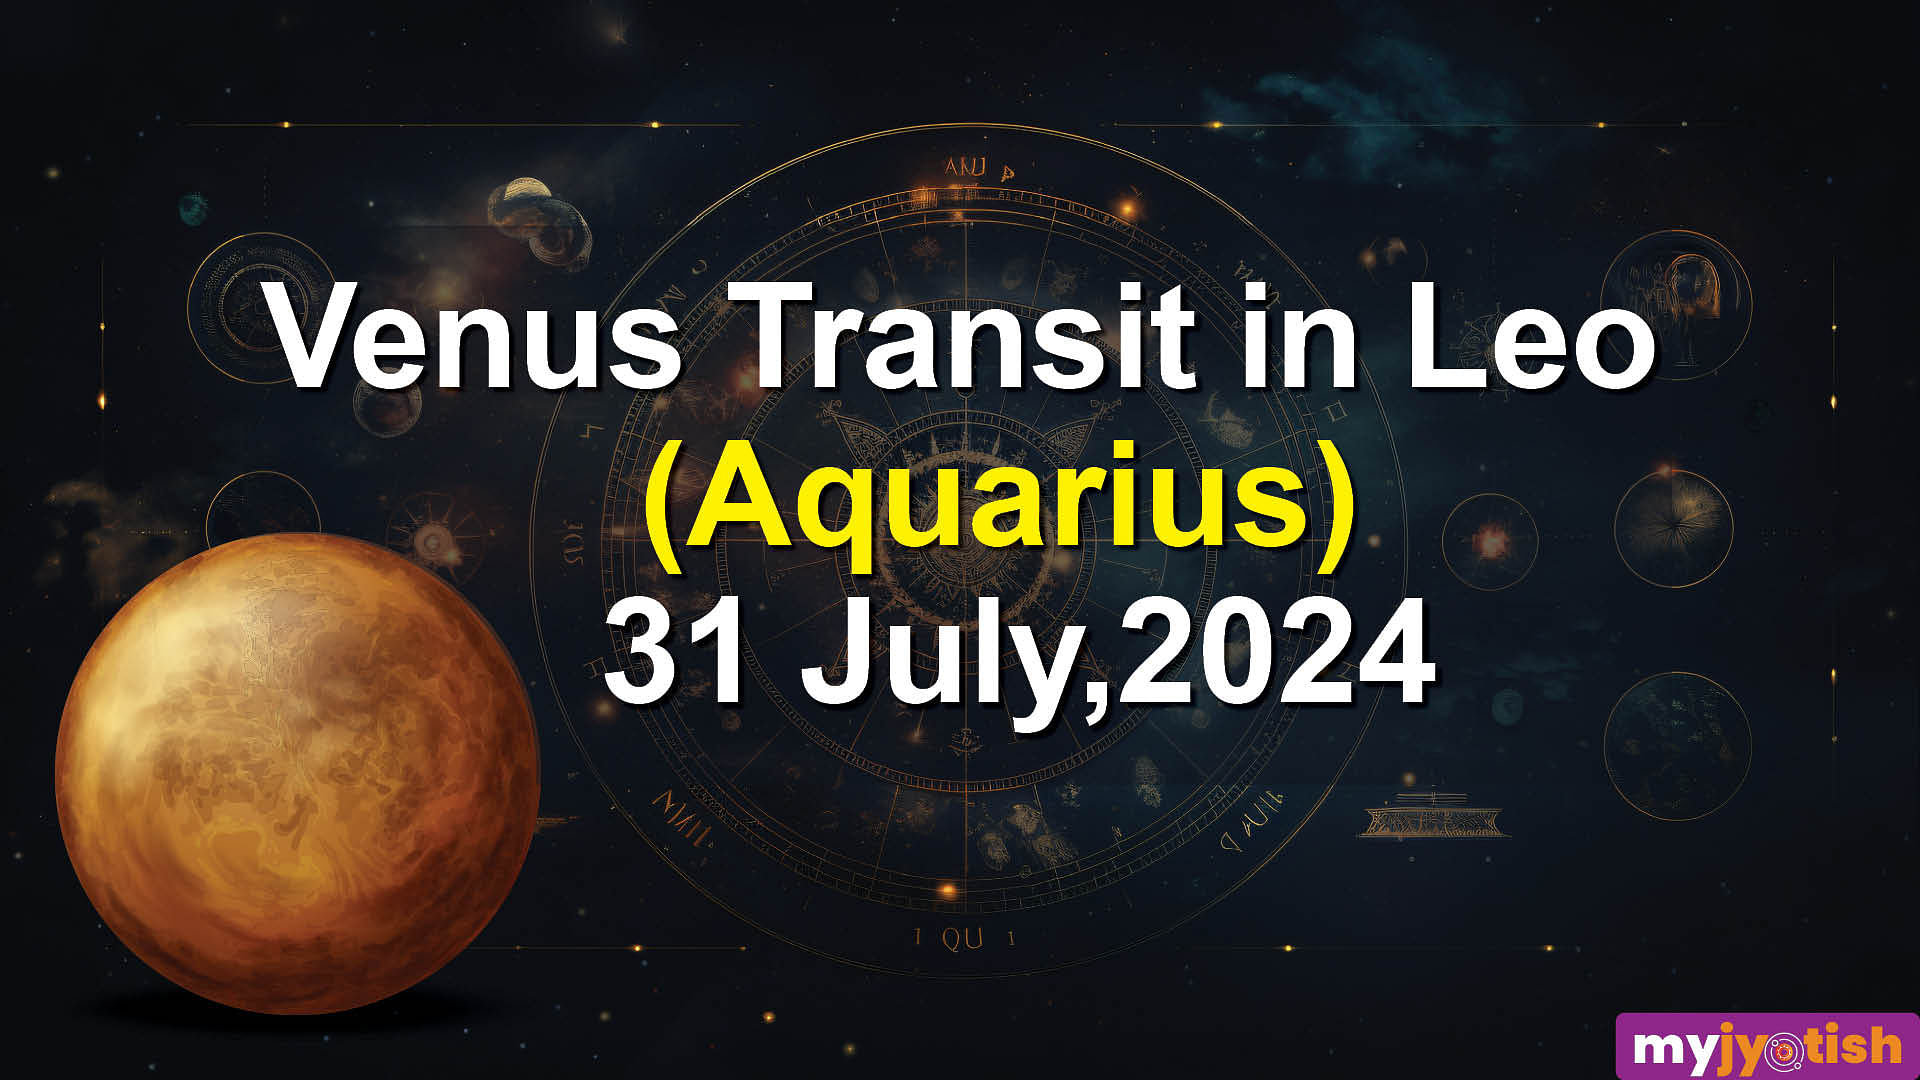 Venus transit in leo